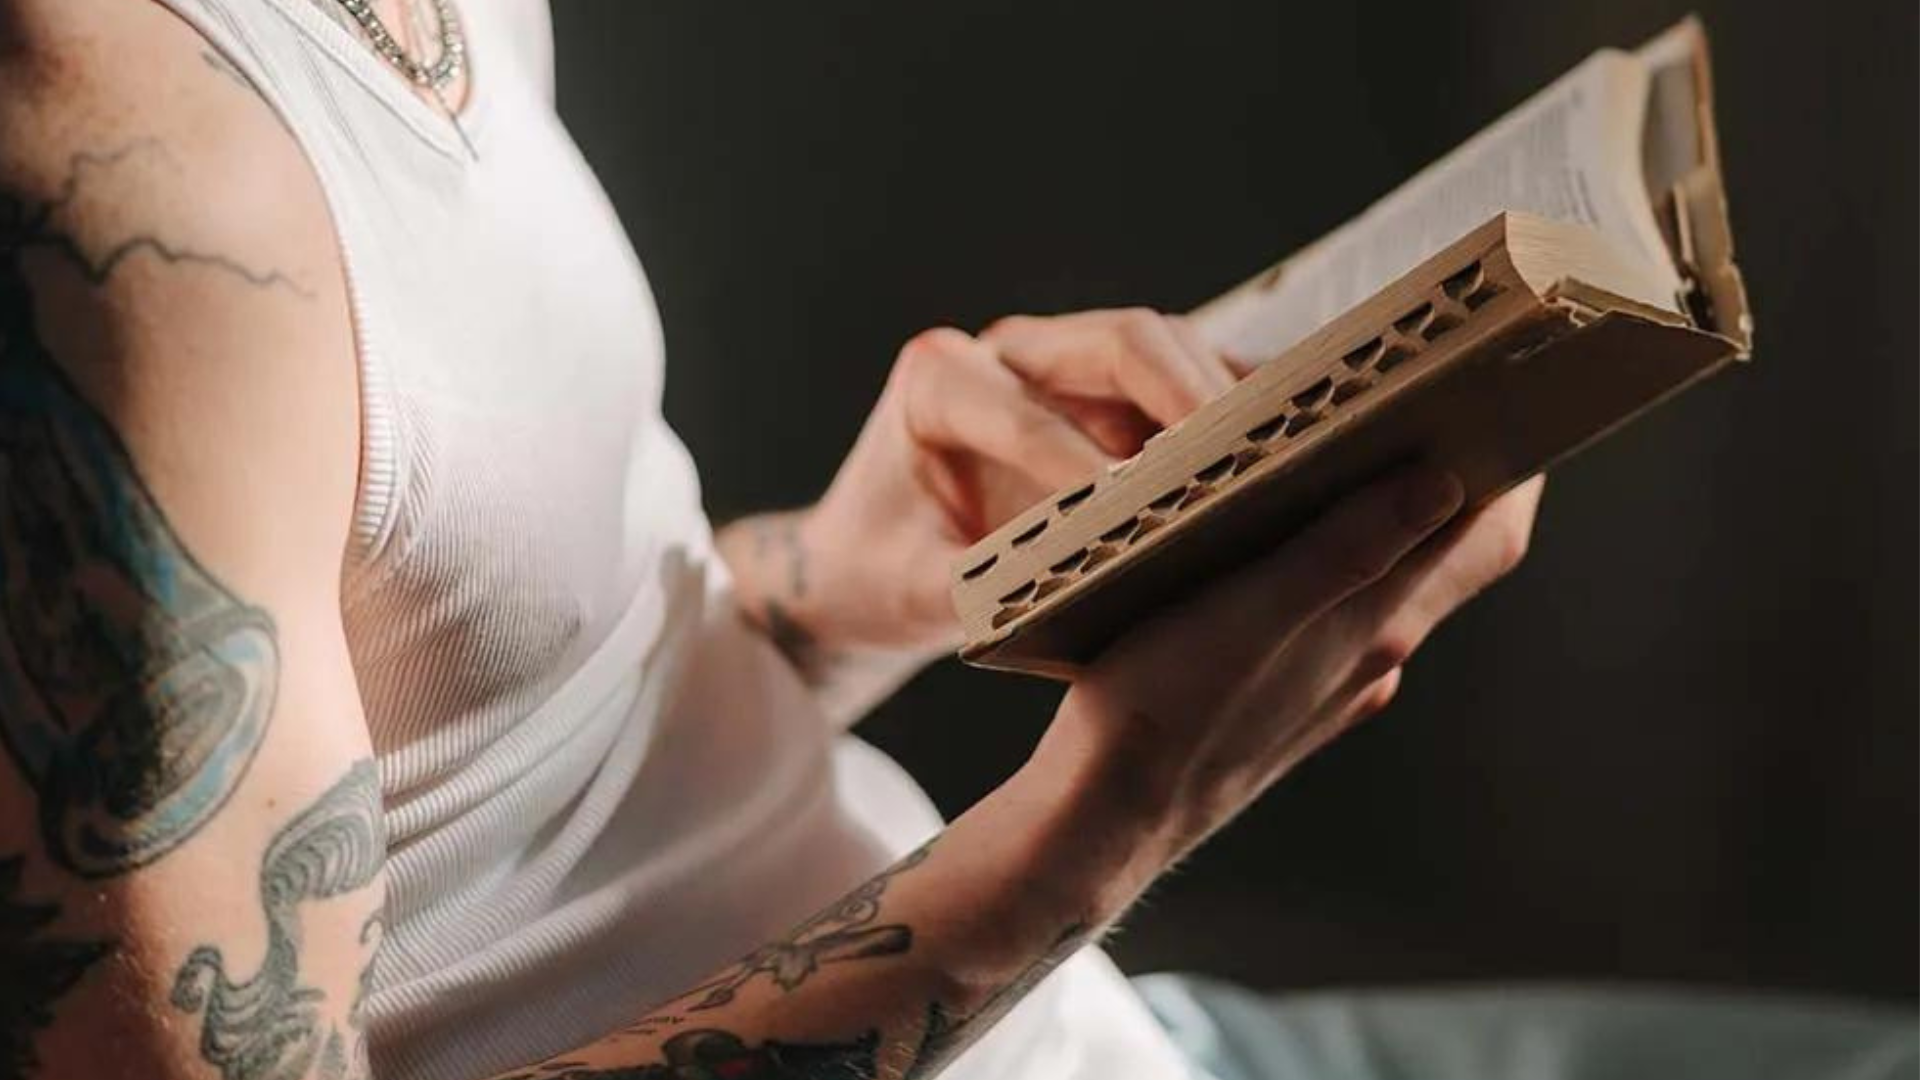 Tatuagem é pecado ou não: o que a Bíblia diz sobre tatuagem?